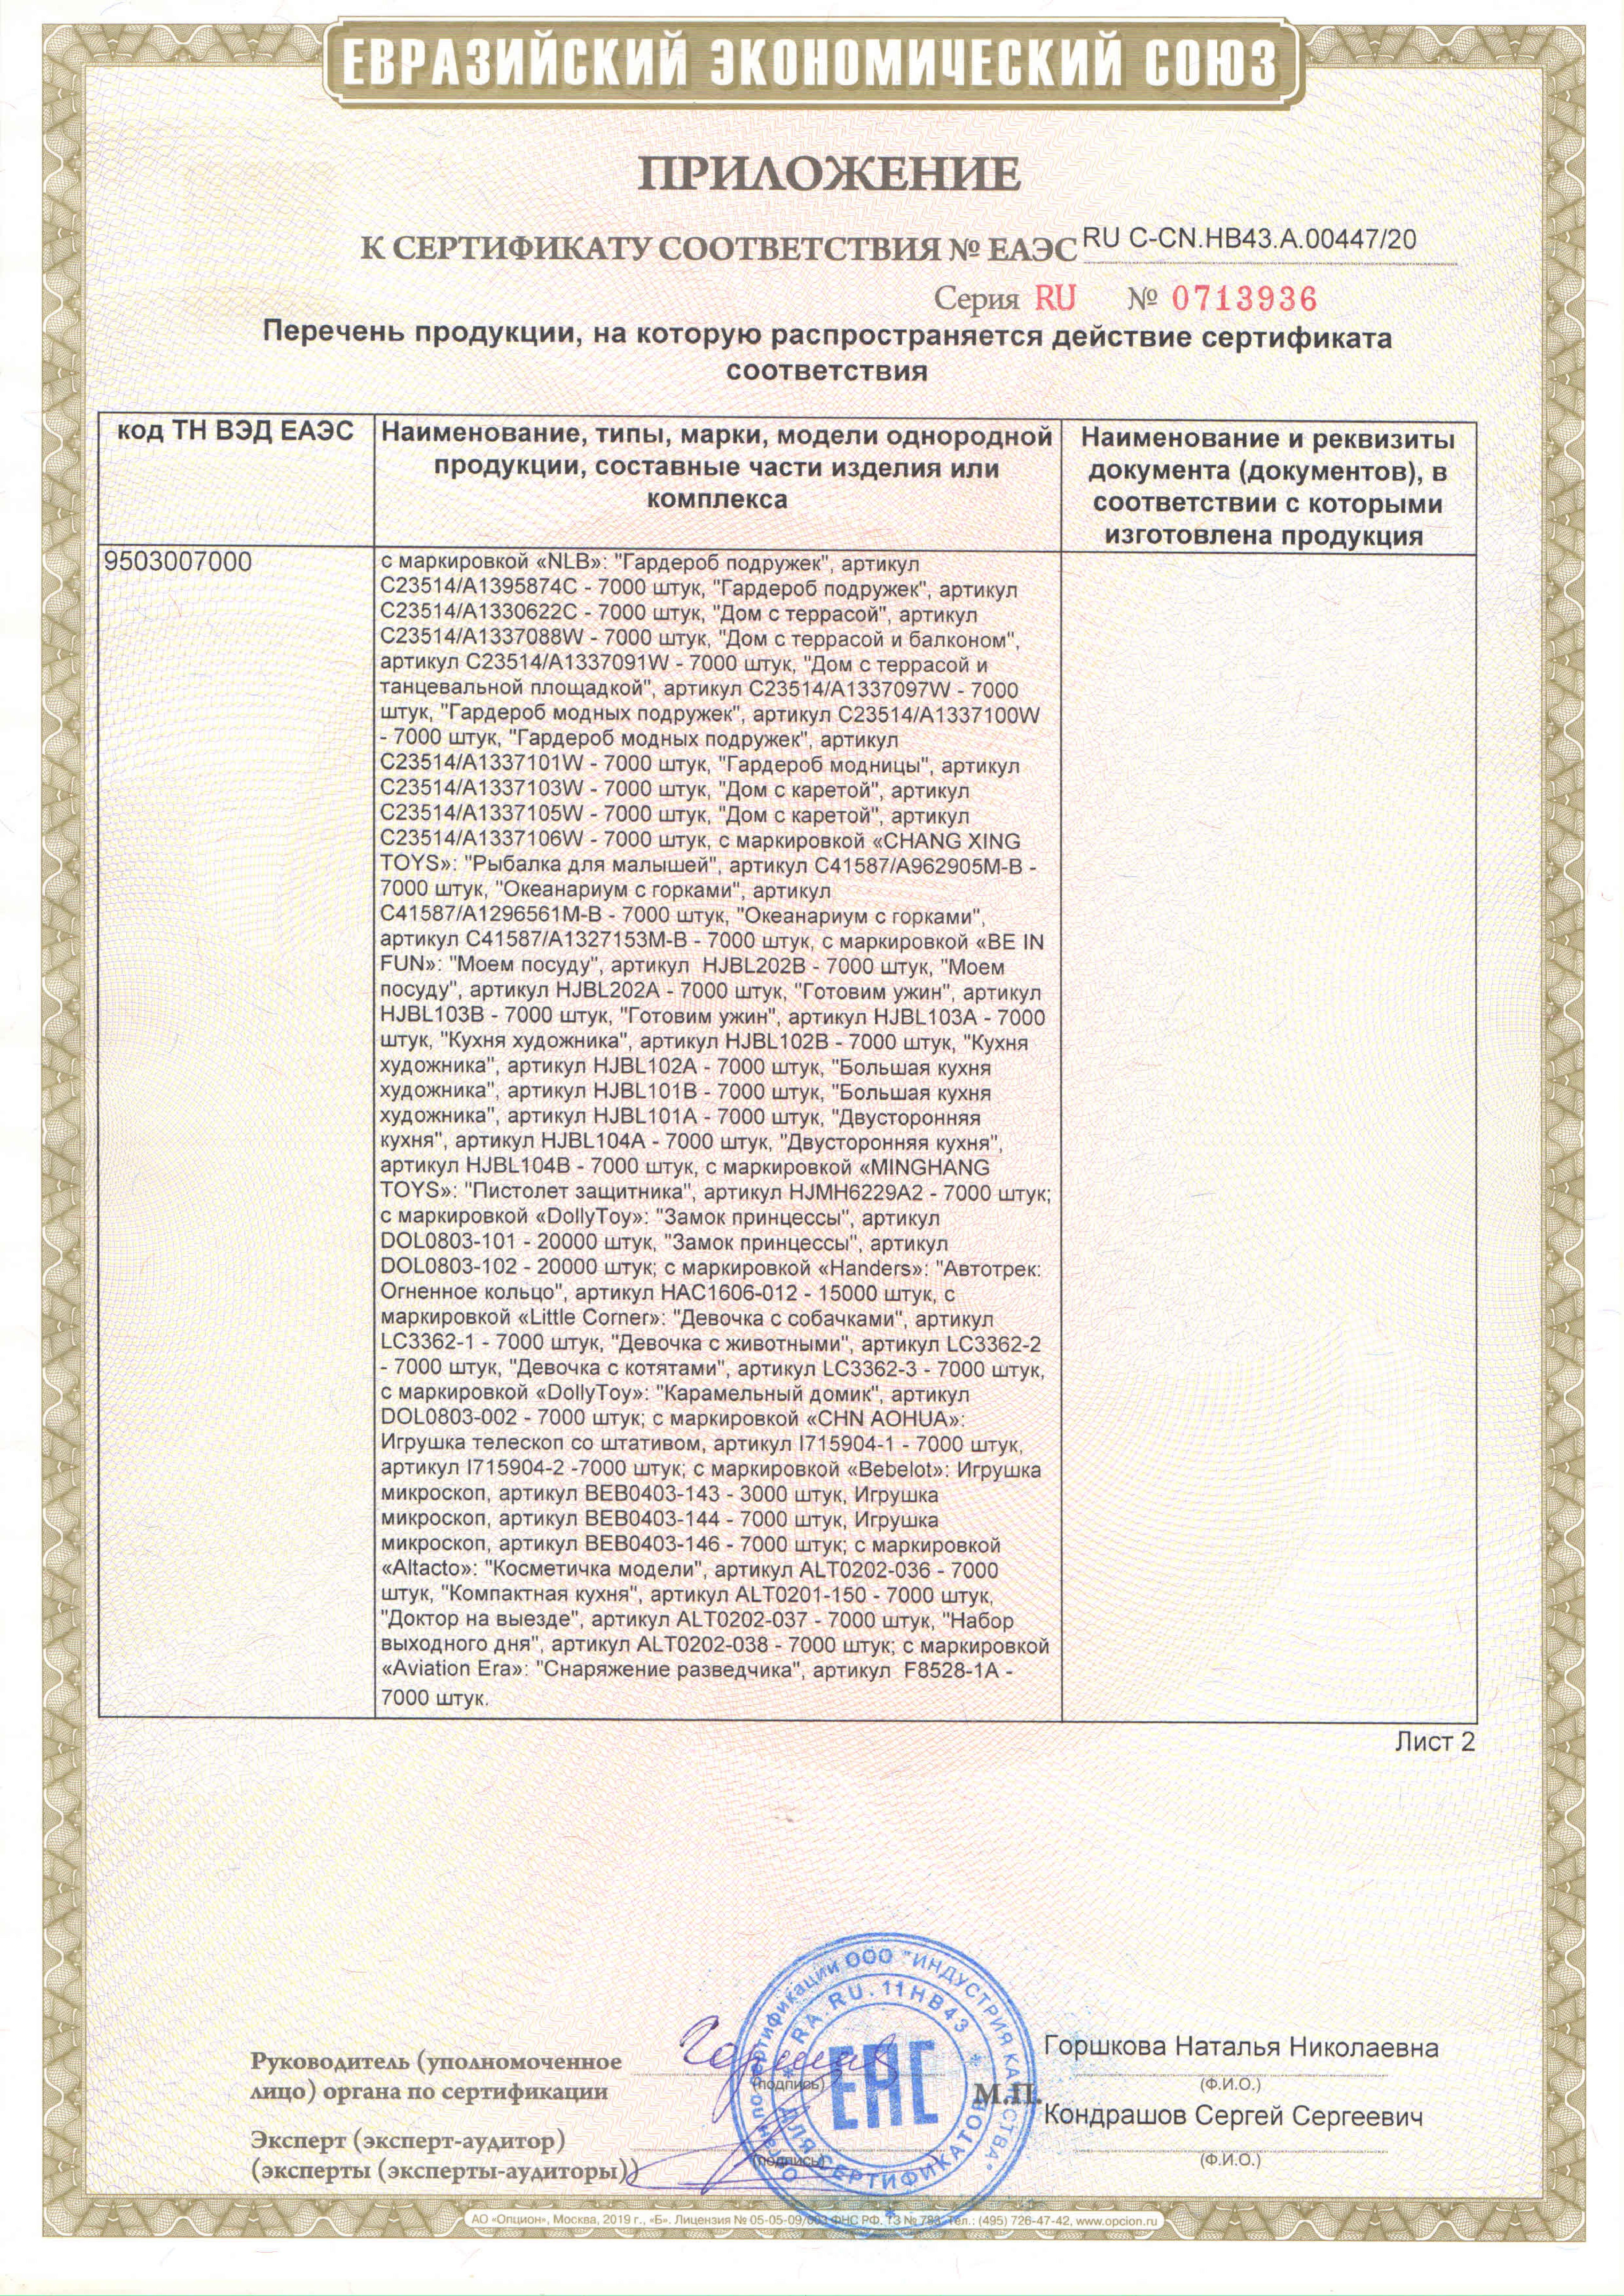 ЕАЭС RU C-CN.НВ43.А.00447 20: /images/certificates/EAES-RU-C-CN.NV43.A.00447-20-3.jpg